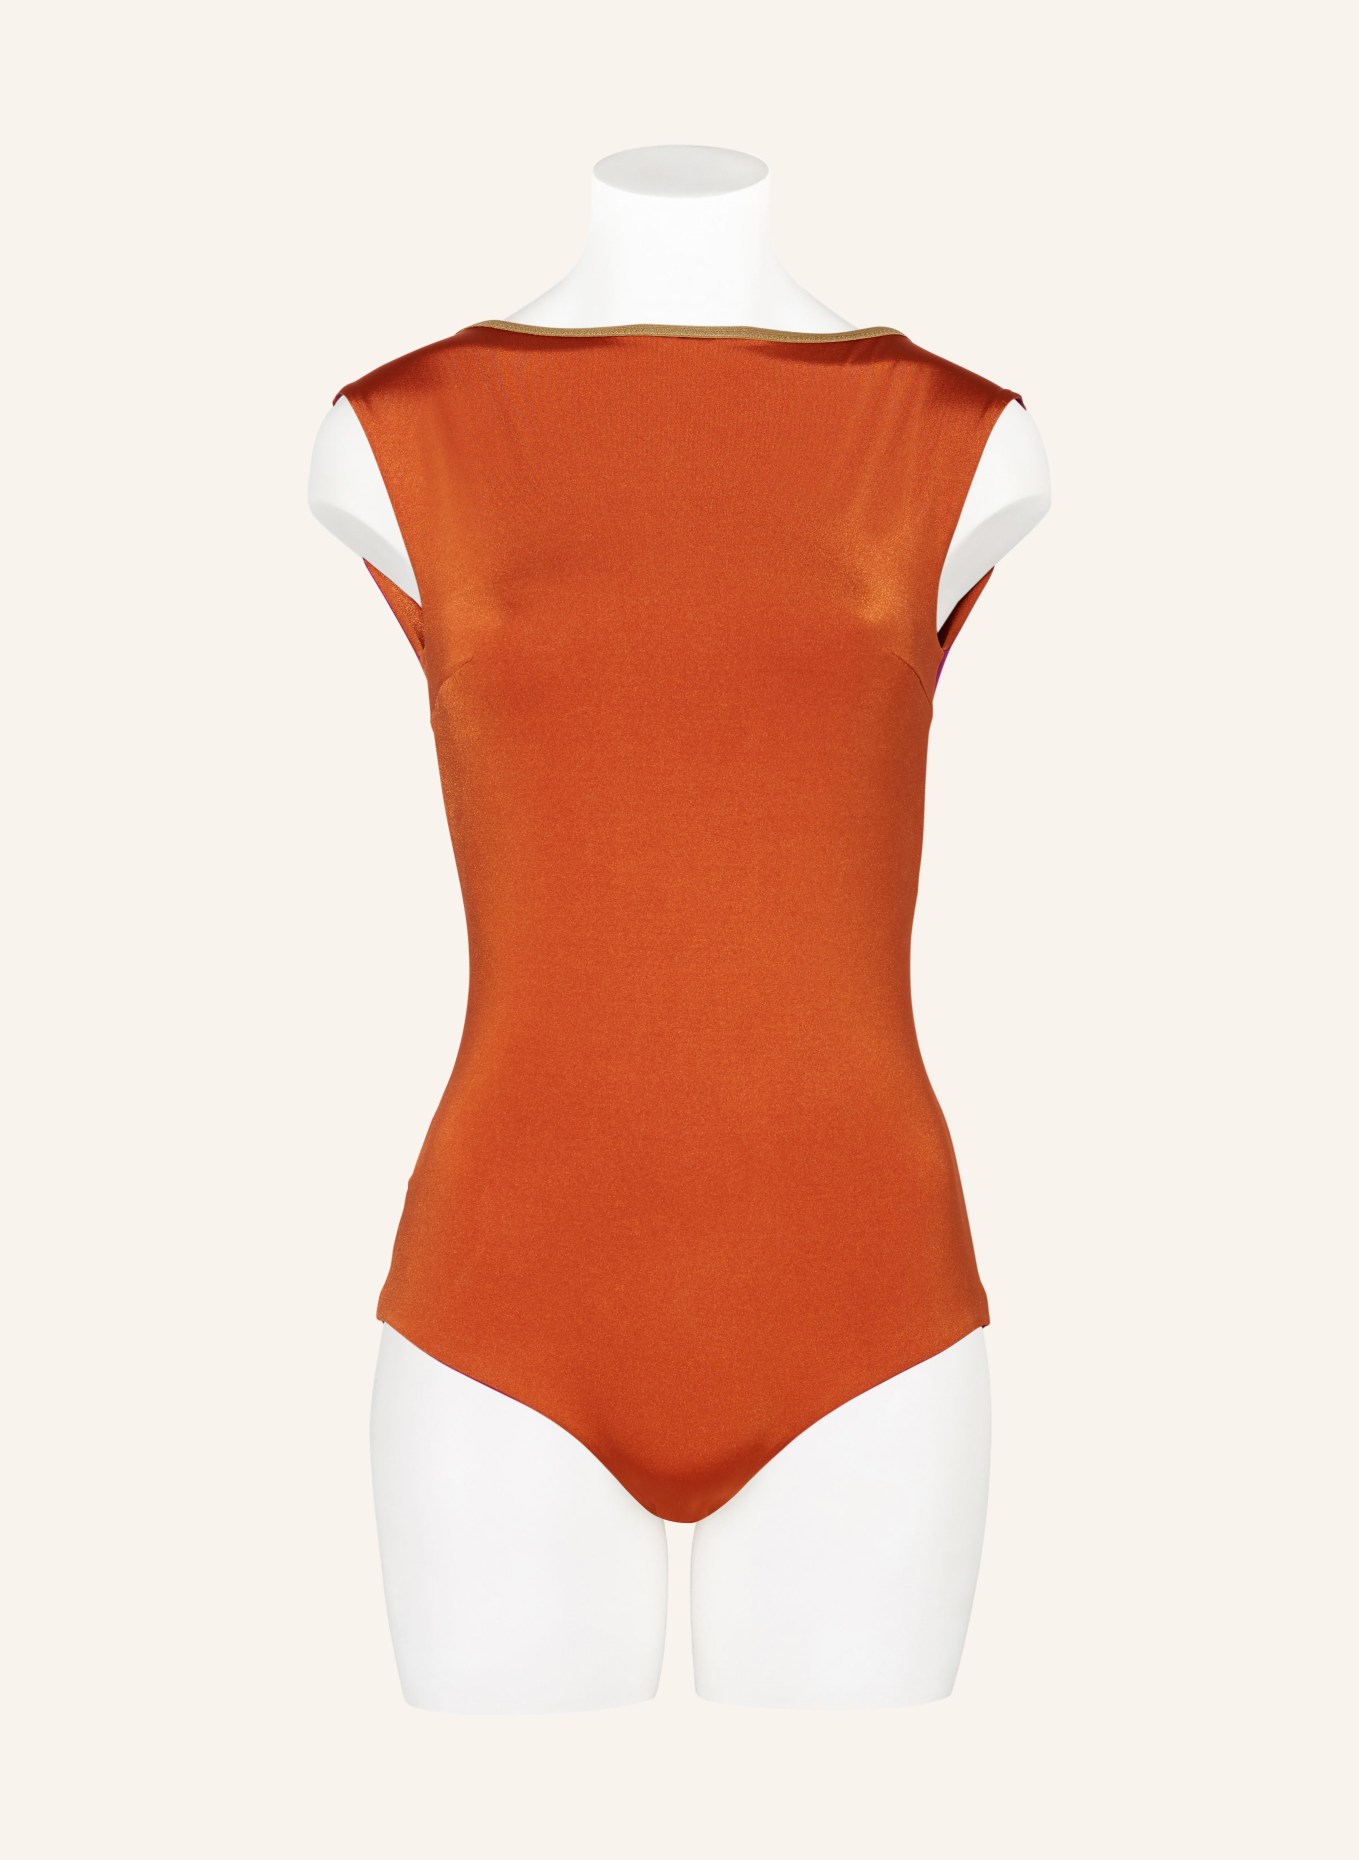 MYMARINI Swimsuit SEABODY SHINE reversible , Color: FUCHSIA/ DARK ORANGE (Image 2)